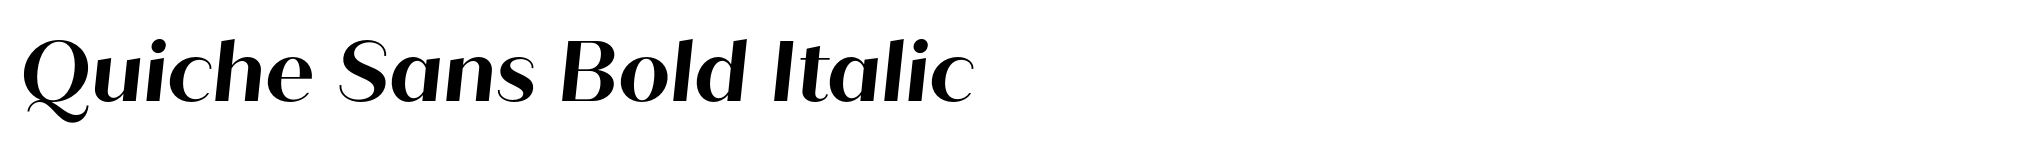 Quiche Sans Bold Italic image